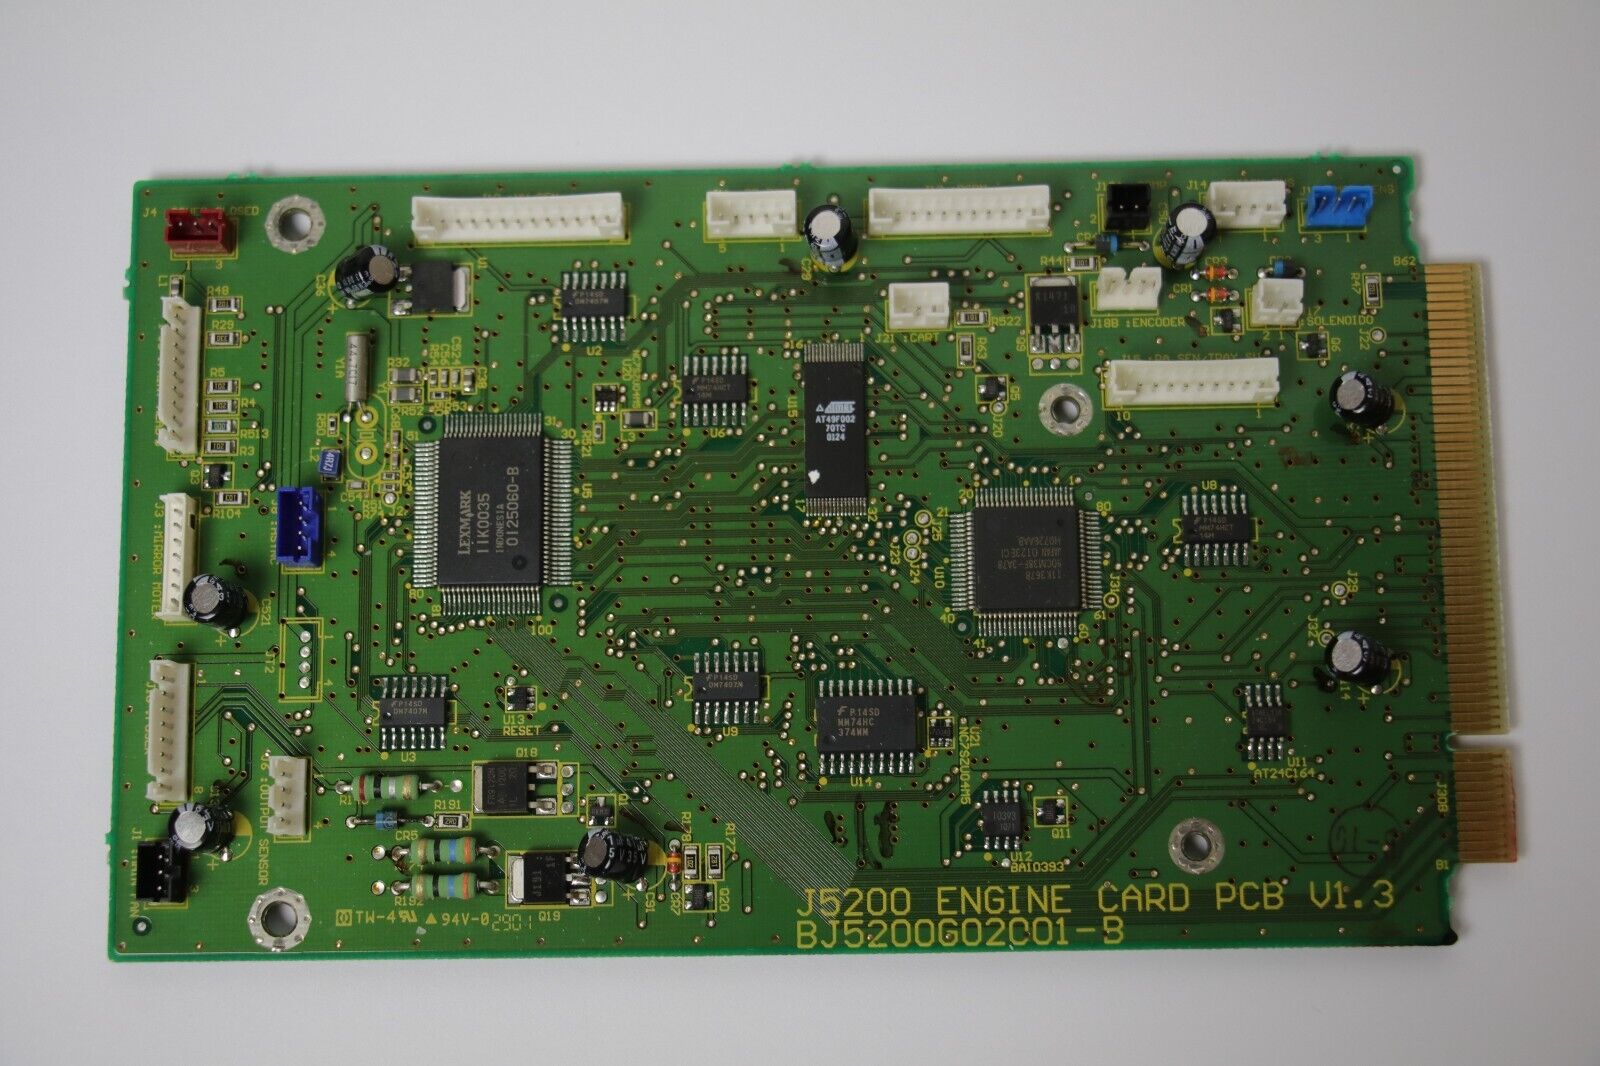 J5200 Engine Card PCB v1.3, BJ5200G02001-B LEXMARK IBM T522 PANEL CONTROLLER